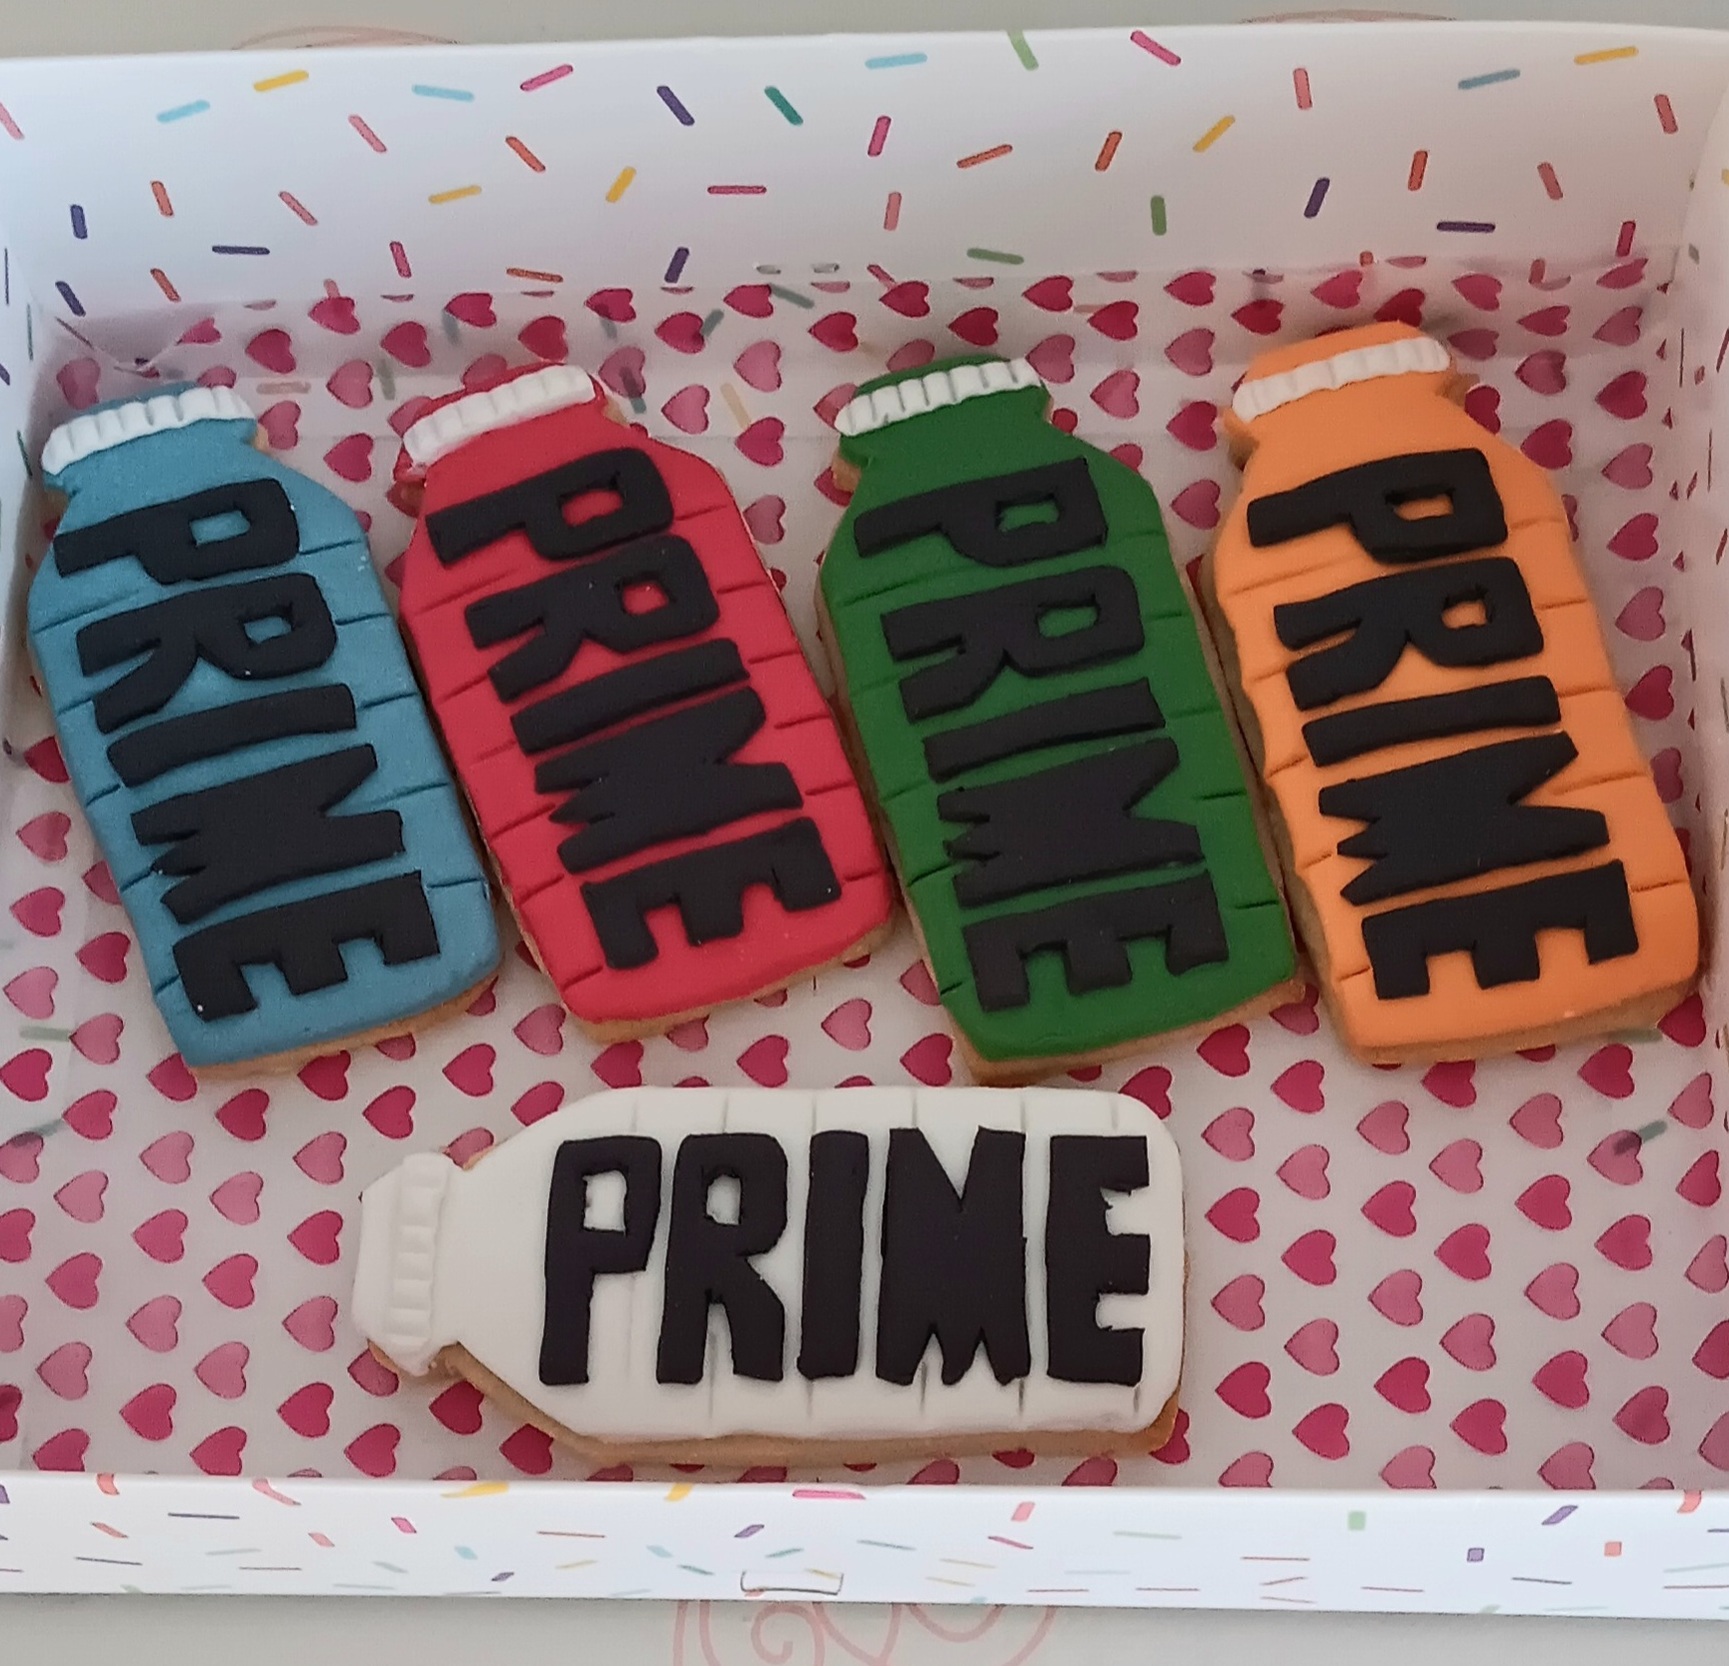 "Prime" drink inspired cookies